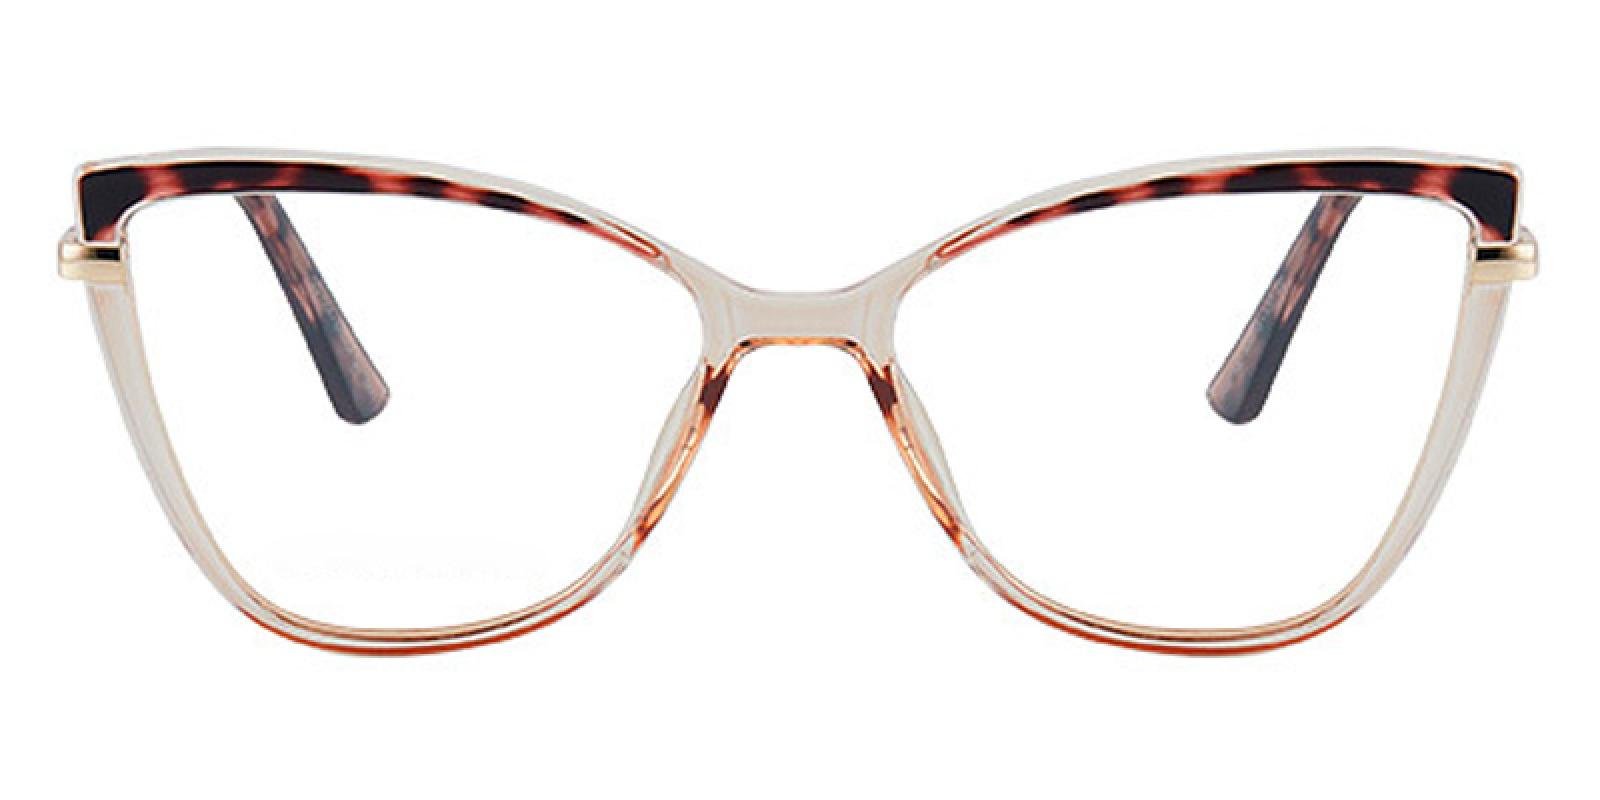 Maile-Tortoise-Cat-TR-Eyeglasses-detail